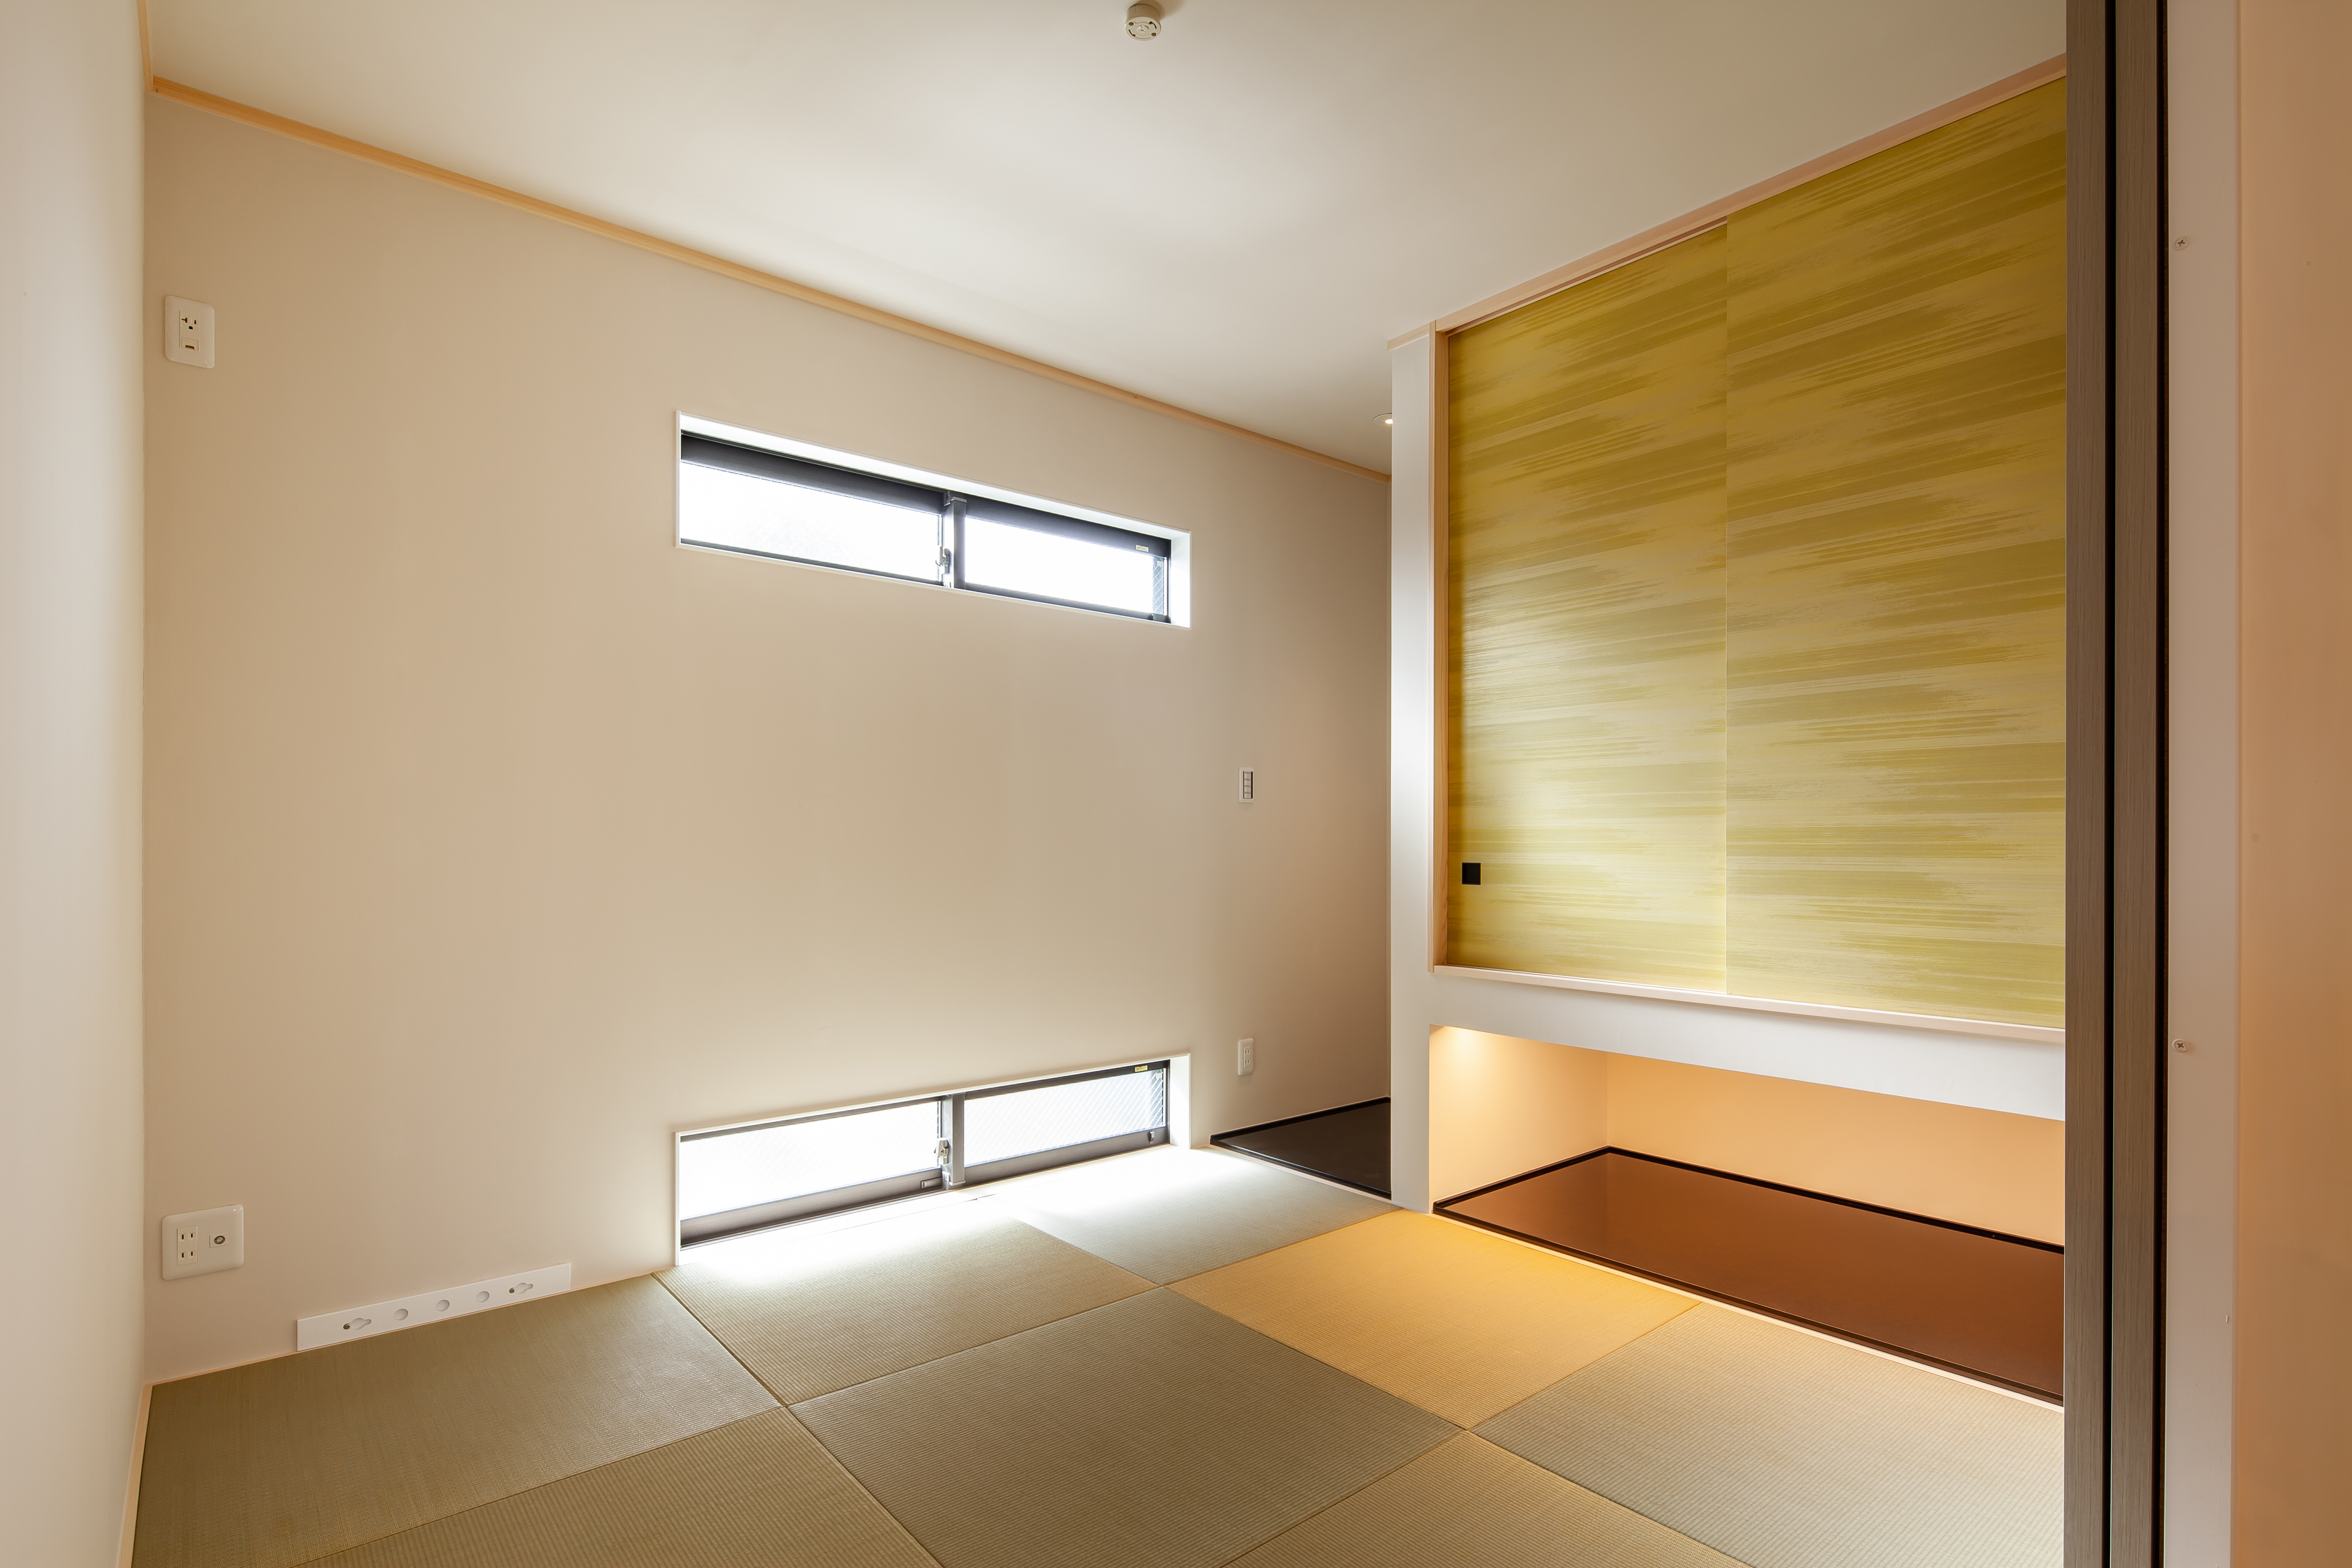 床の間と襖のコントラストが美しい和室